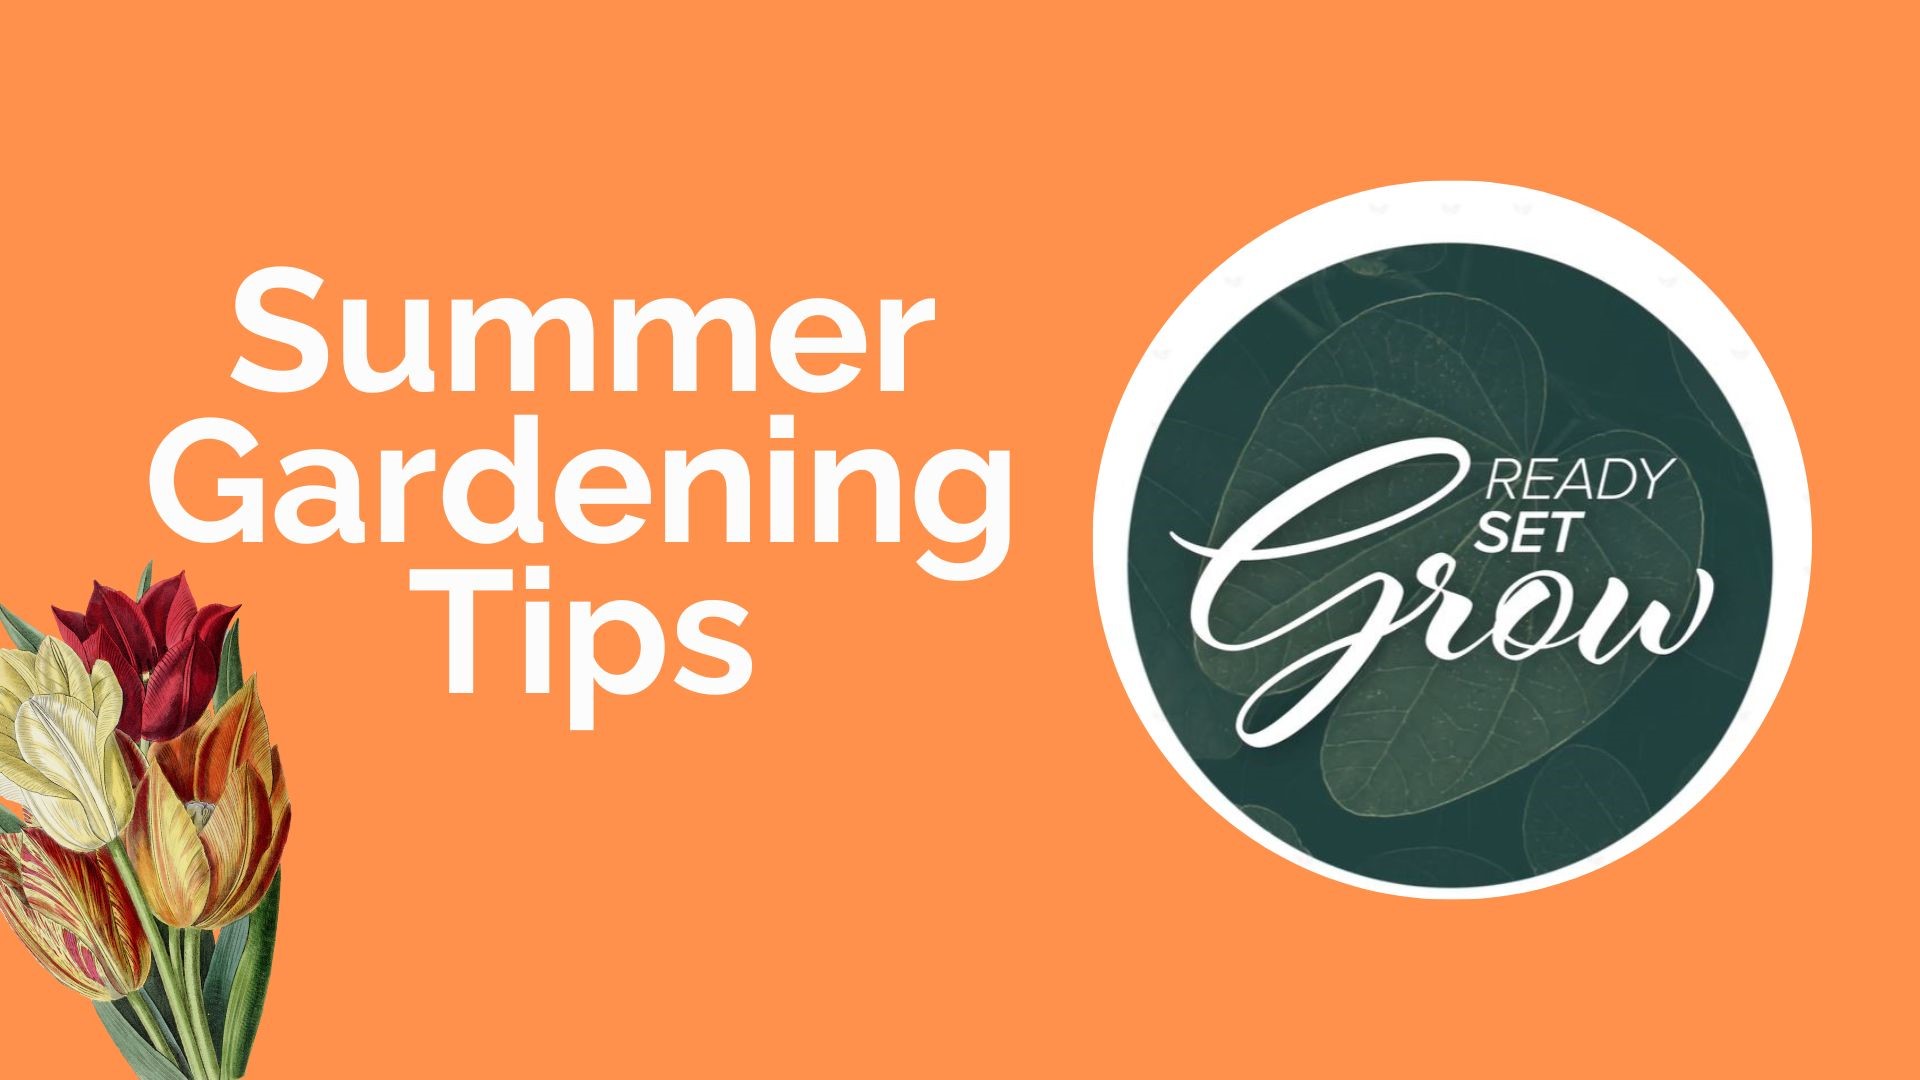 让你的草坪和花园在高温下保持安全的技巧，以及让你的院子远离蚊子。此外，你还可以自己种植香草、洋葱和韭菜。